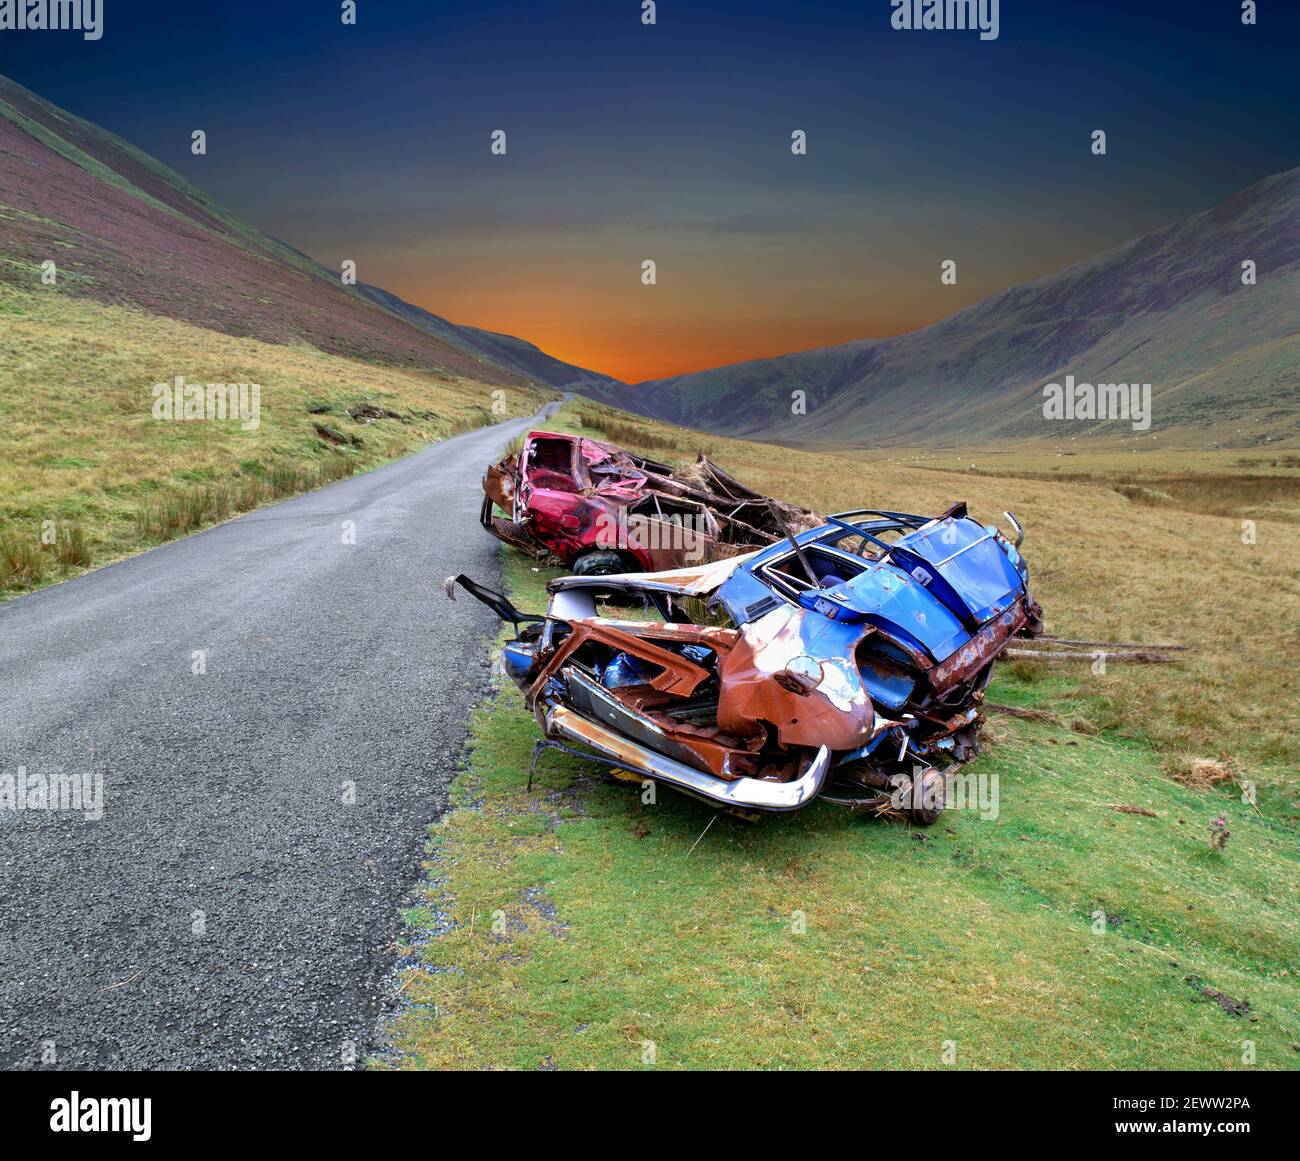 Coches naufragados en una carretera de montaña en Gales (con cielo apocalíptico alterado digitalmente). Foto de stock